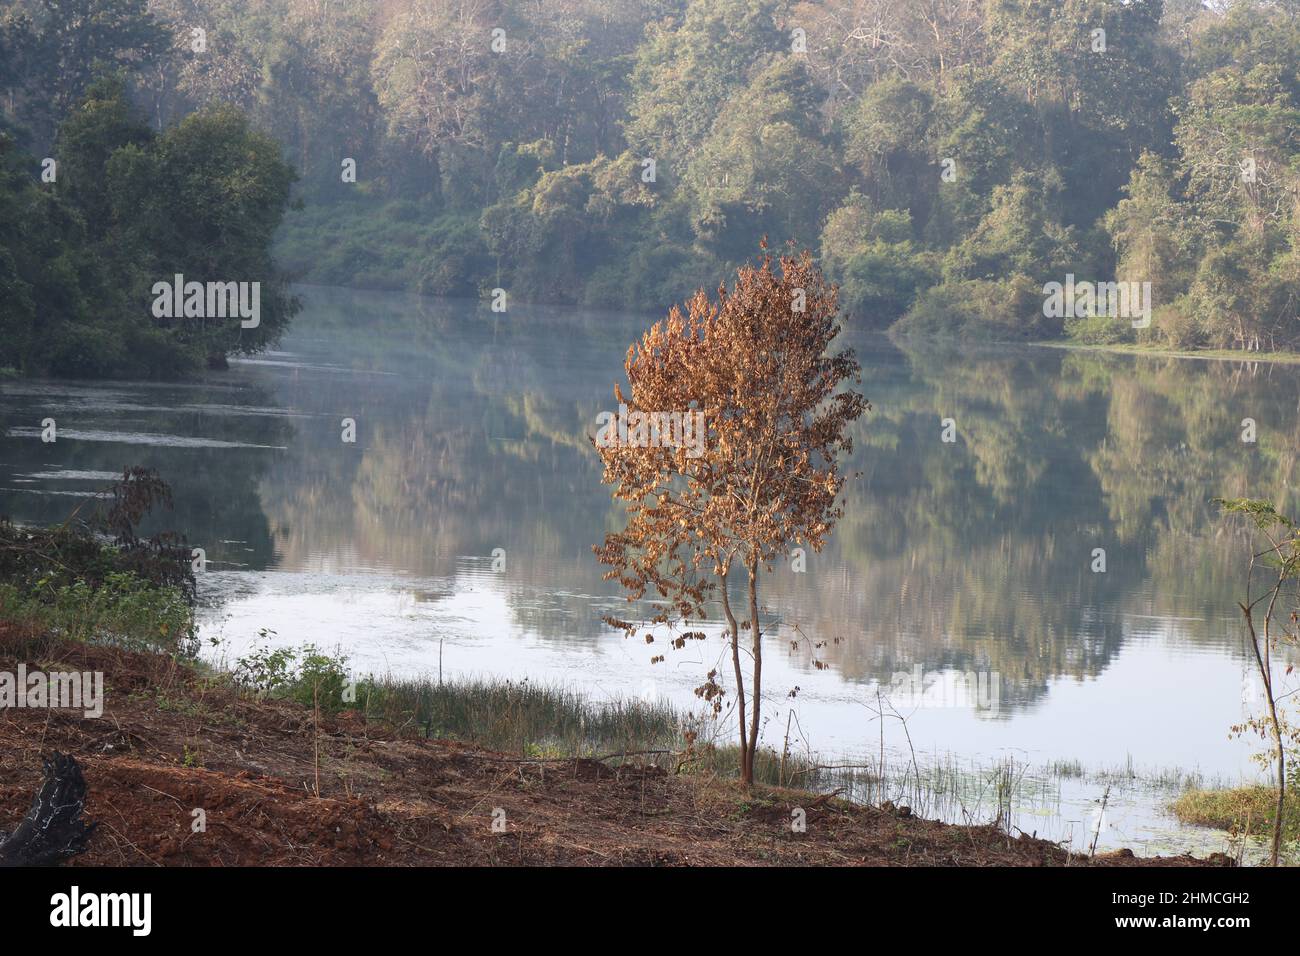 Pianta morta con foglie secche sul lato del lago. L'acqua sullo sfondo riflette gli alberi nella foresta Foto Stock